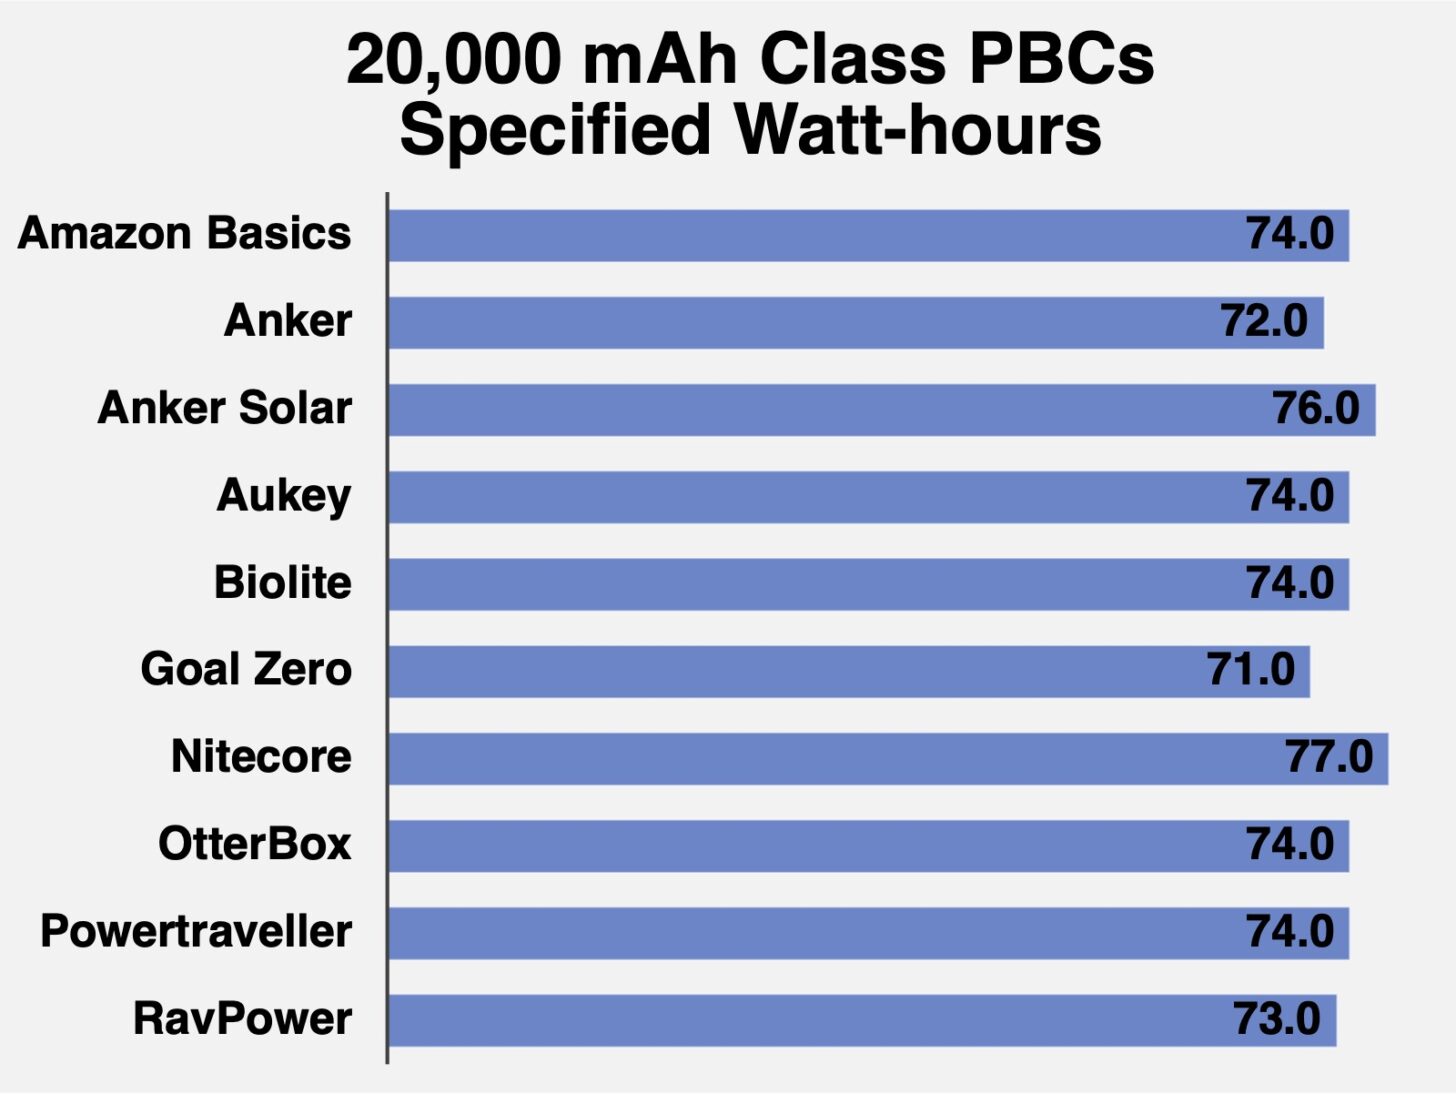 Specified Watt-hours for each 20,000 mAh class PBC. Longer is better.